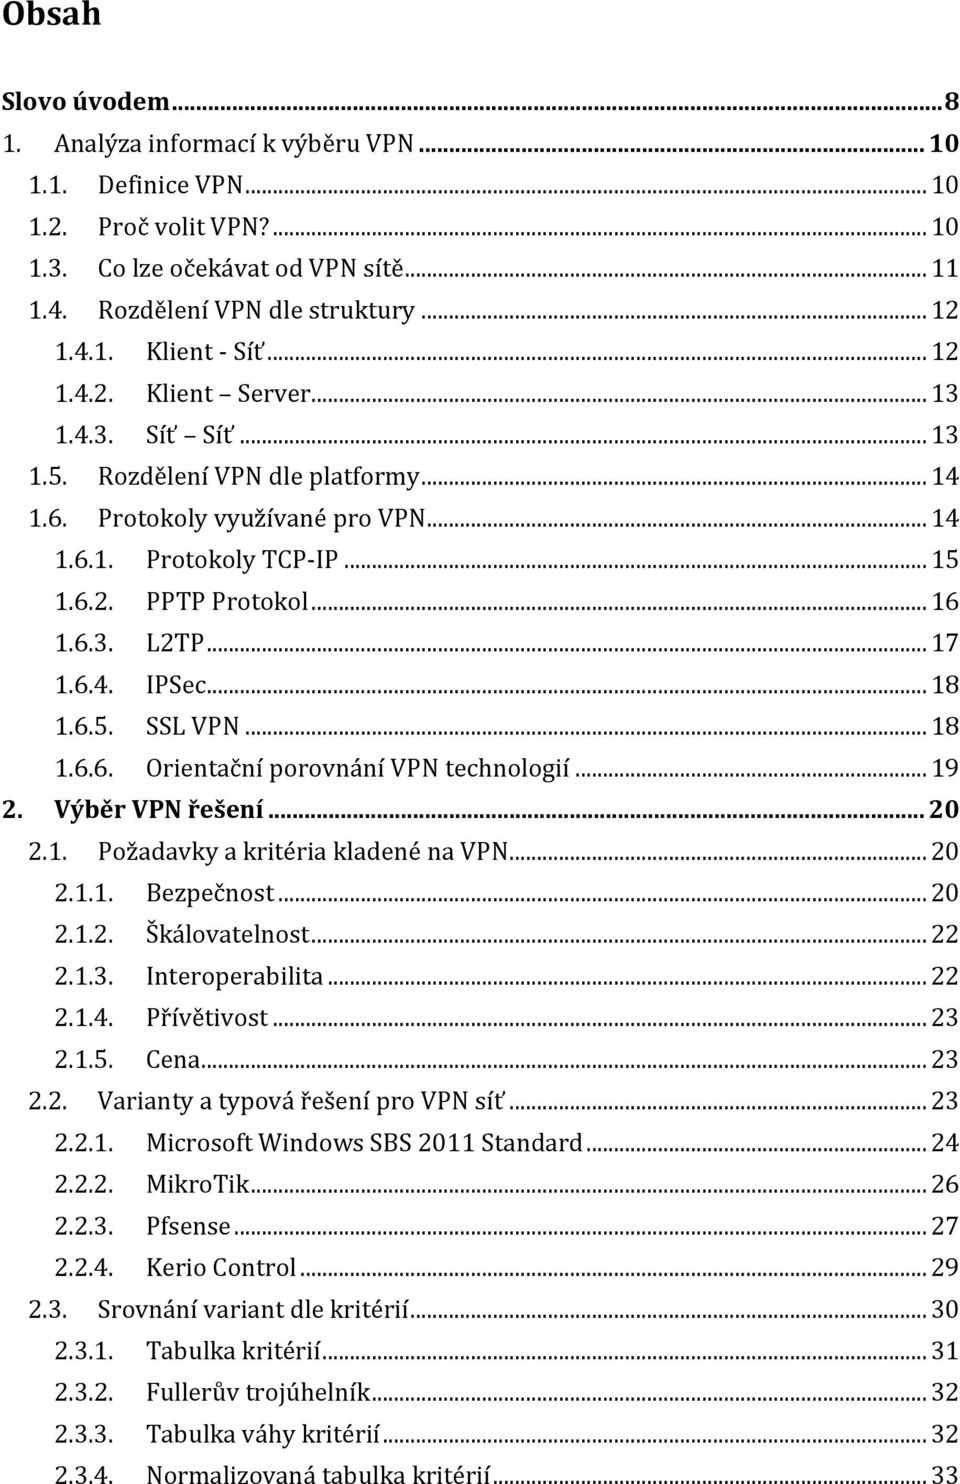 .. 17 1.6.4. IPSec... 18 1.6.5. SSL VPN... 18 1.6.6. Orientační porovnání VPN technologií... 19 2. Výběr VPN řešení... 20 2.1. Požadavky a kritéria kladené na VPN... 20 2.1.1. Bezpečnost... 20 2.1.2. Škálovatelnost.